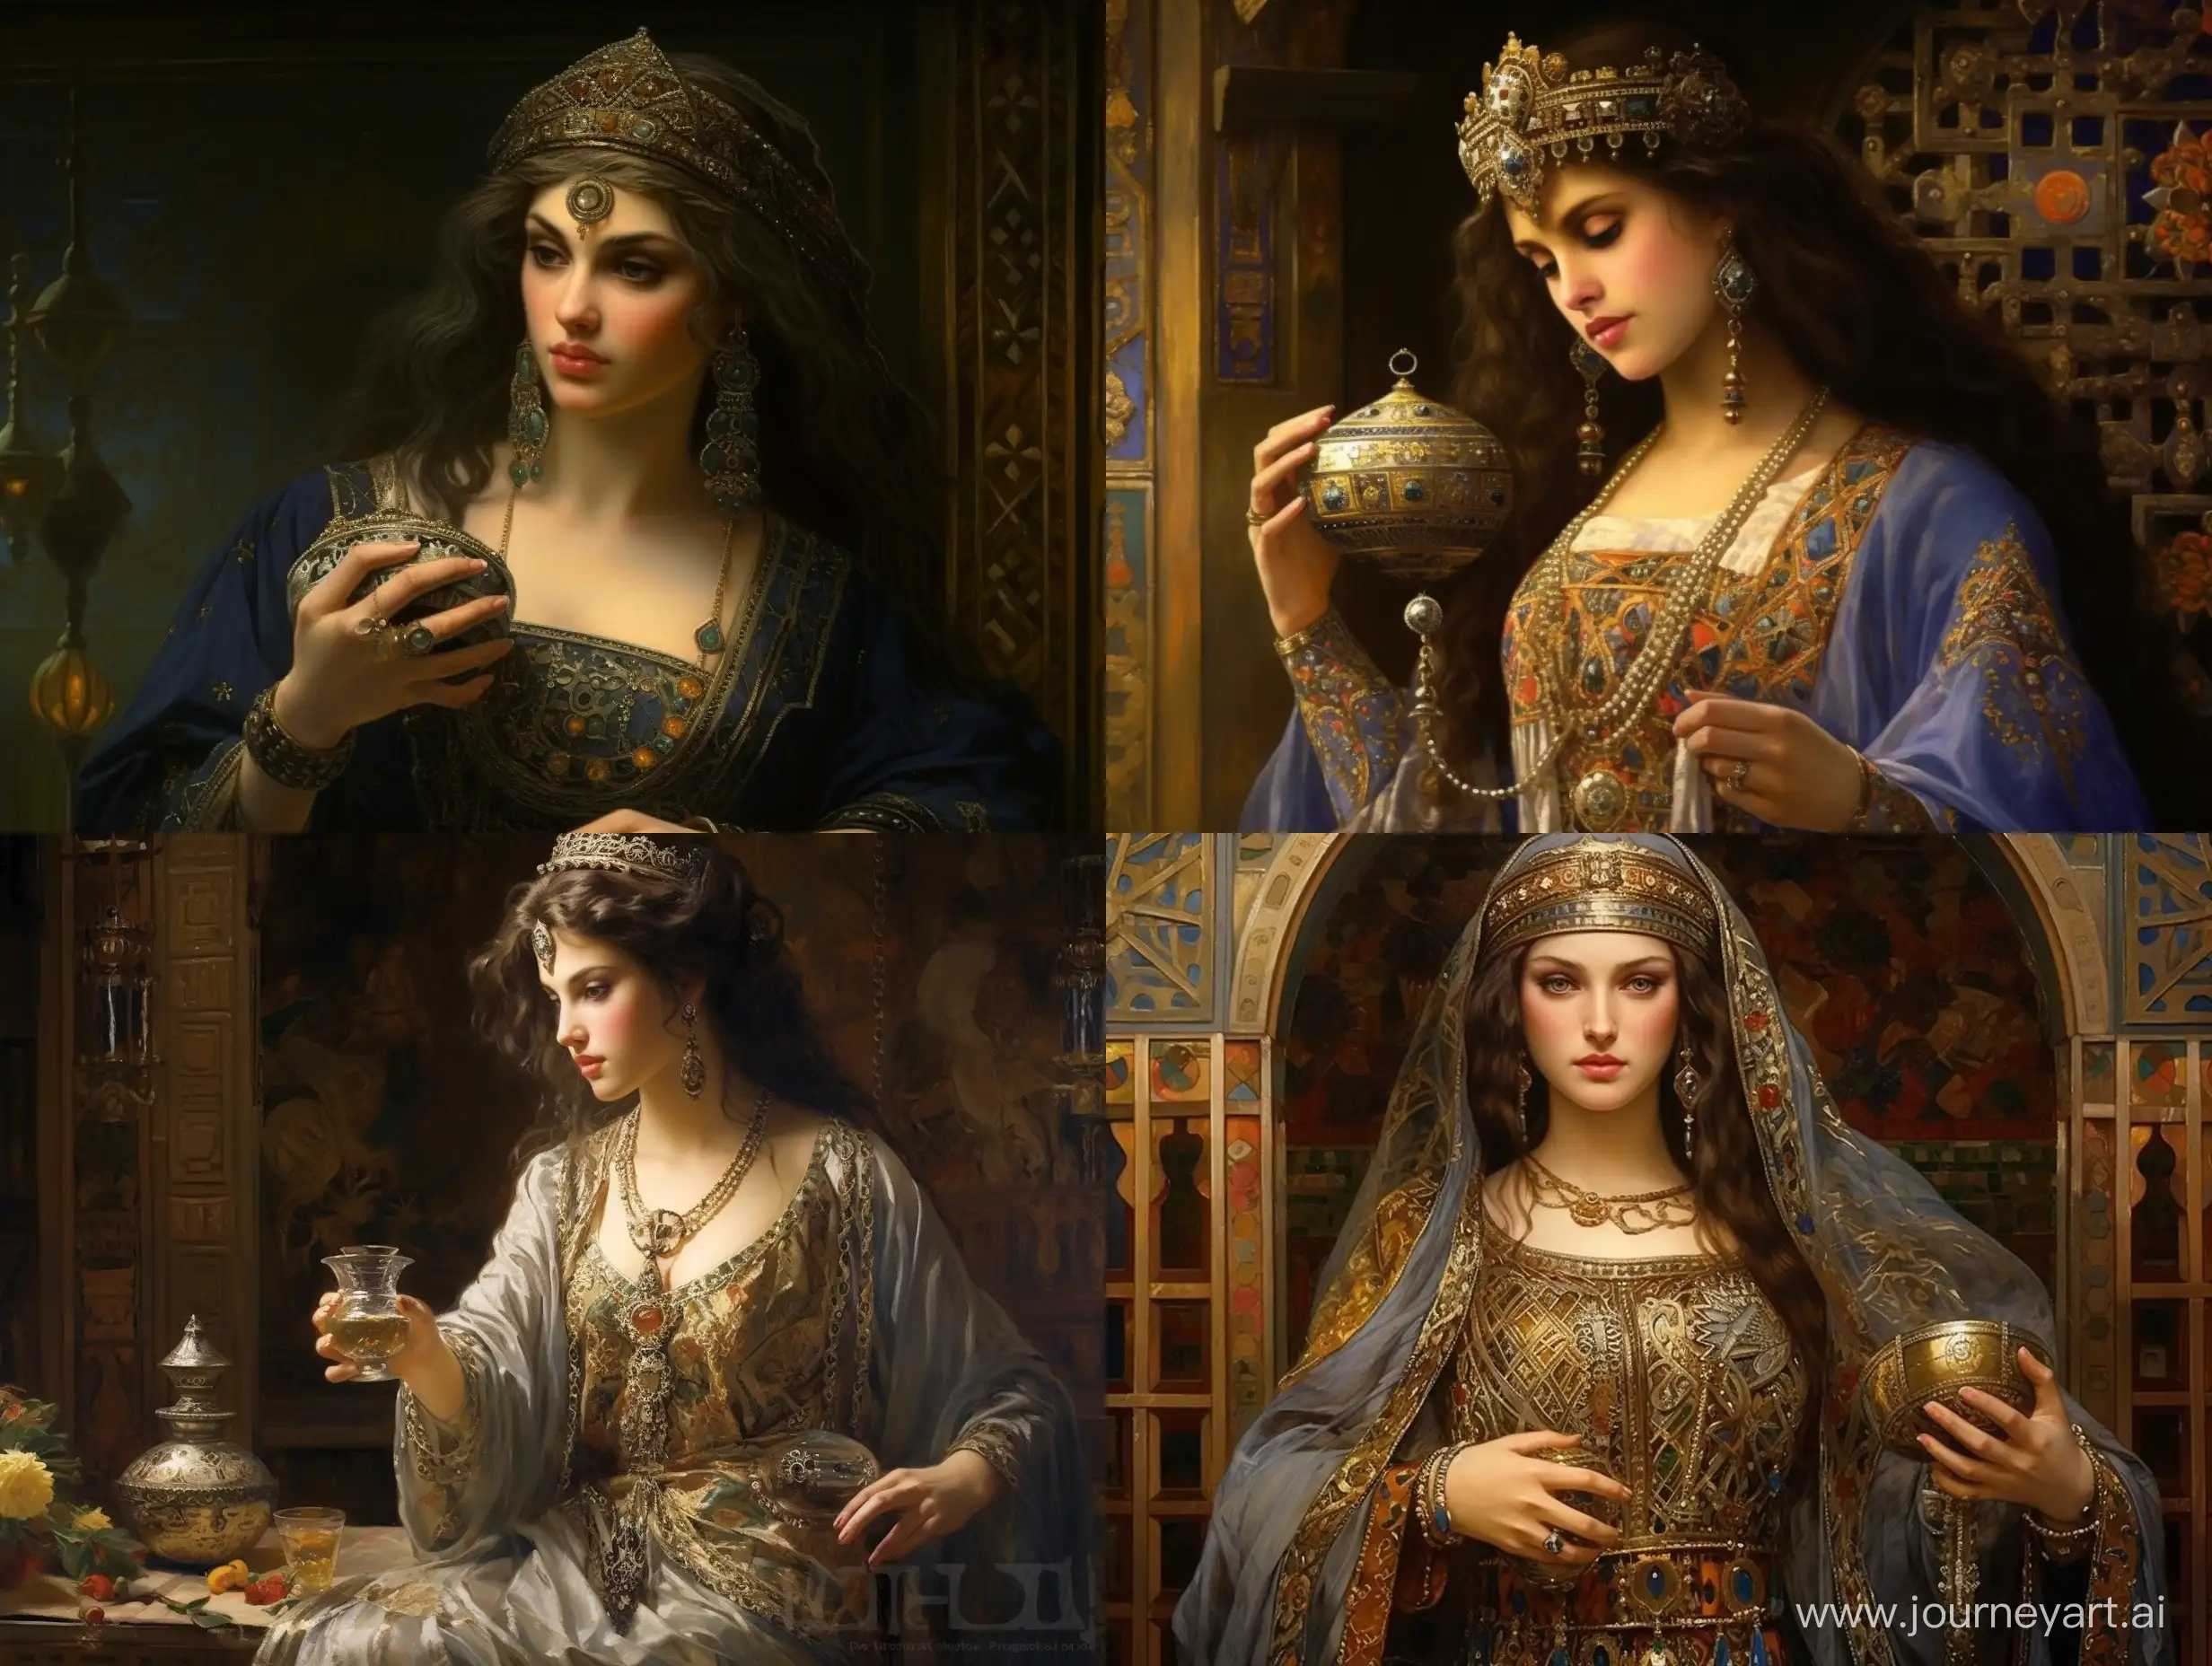 Женщина 8 век, красиво, детально, реалистично,  наряды,  одежда Того времени, держит в руках парфюм!